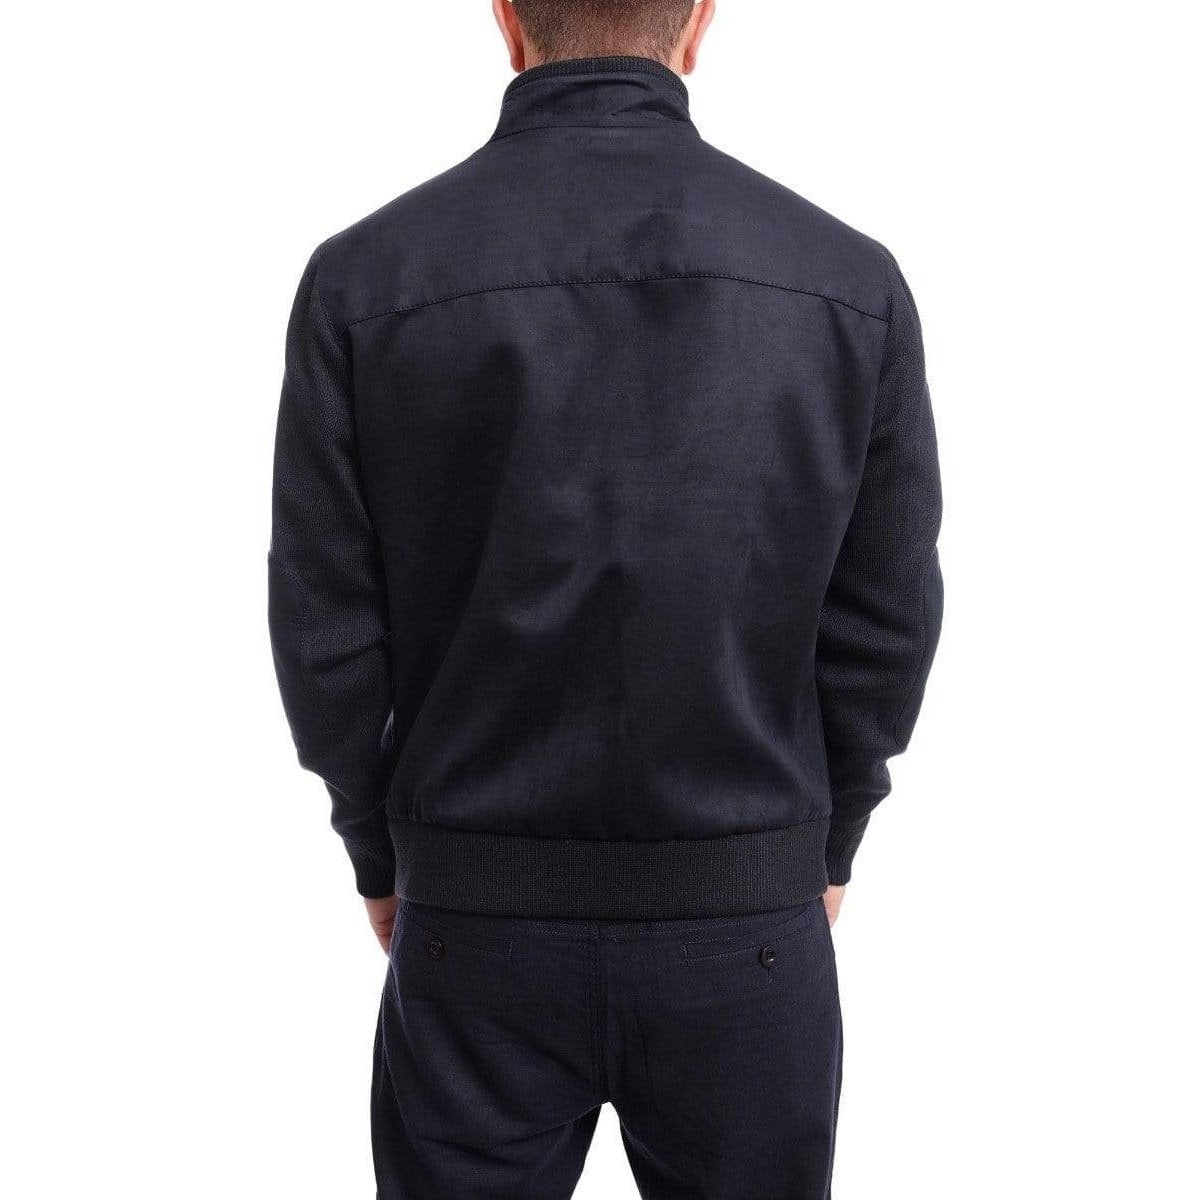 Chaps Ralph Lauren Corduroy Blazer Sport Coat Elbow Patches Men's 44L Tan  Brown | eBay